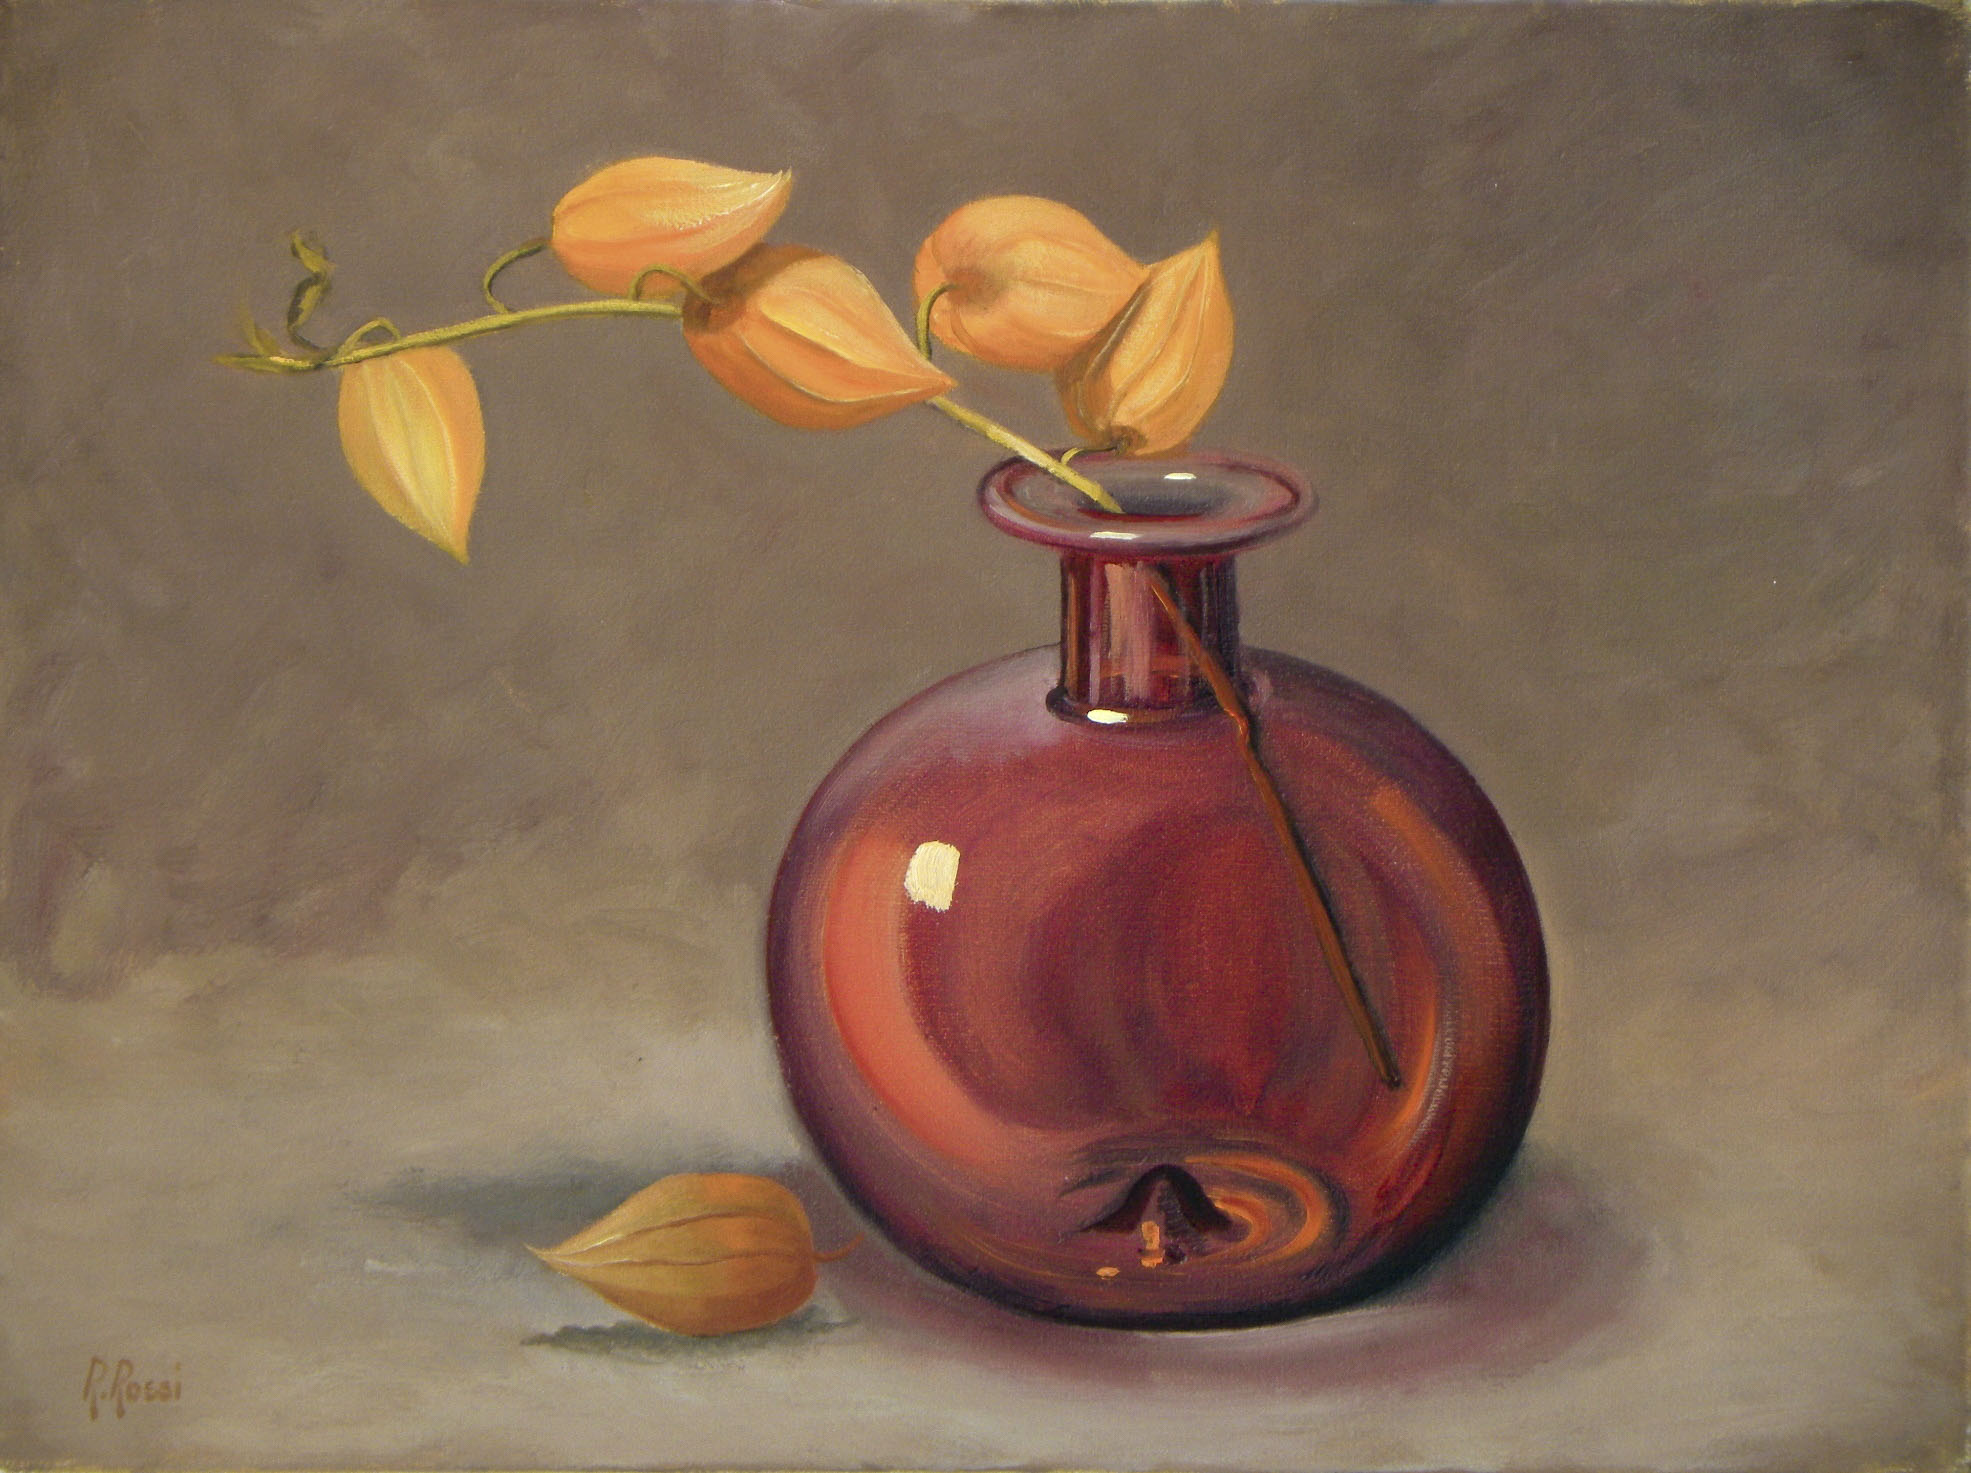 2010 roberta rossi – composizione con alchechengi – olio su tela – 18 x 24